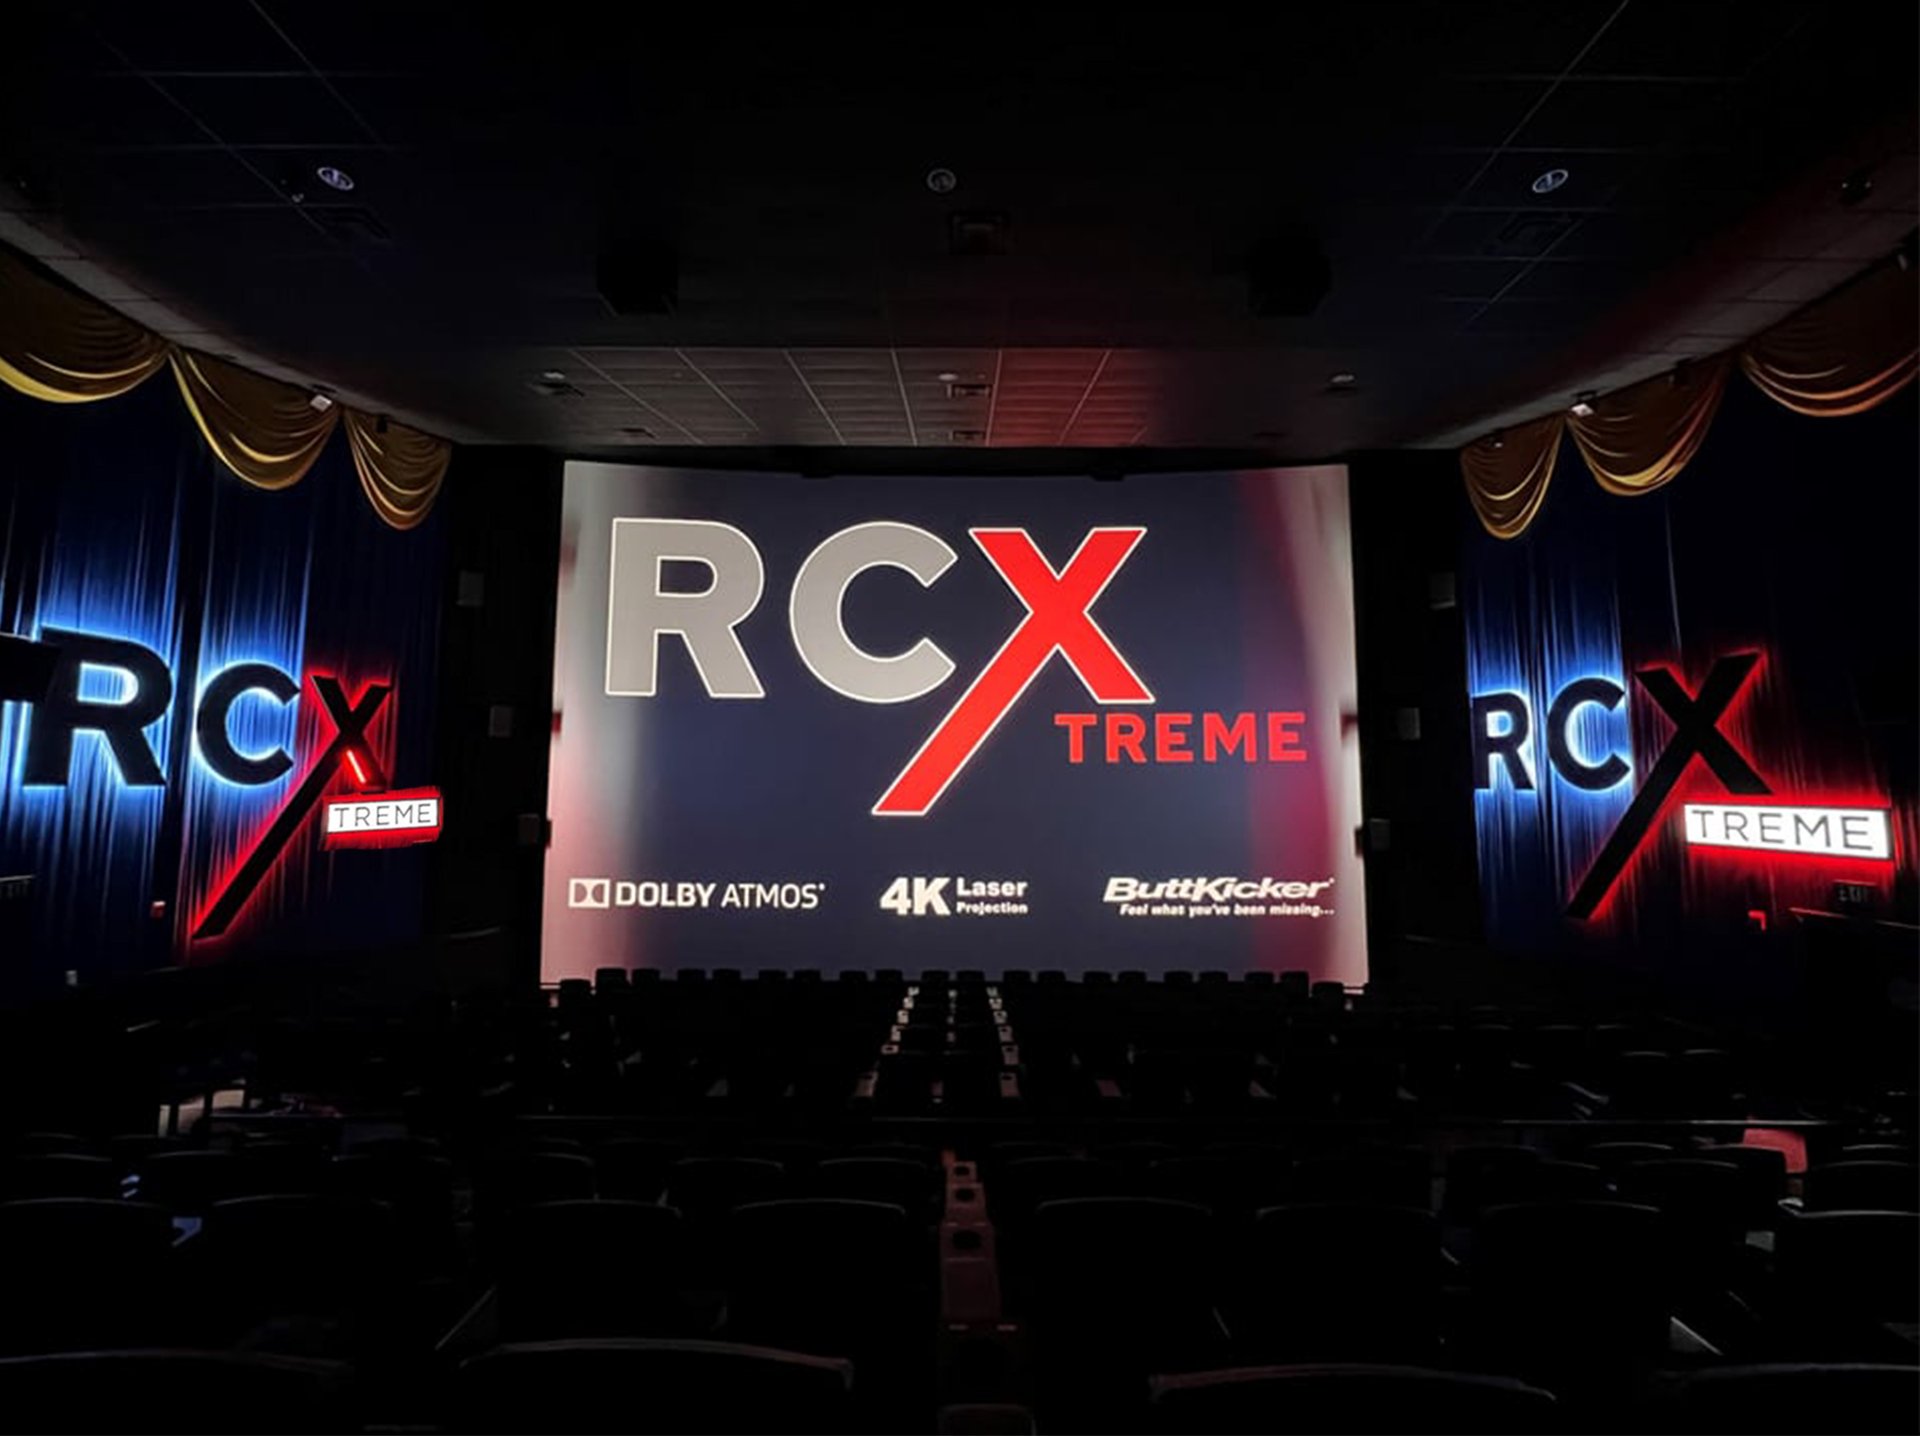 RCX auditoiurm image